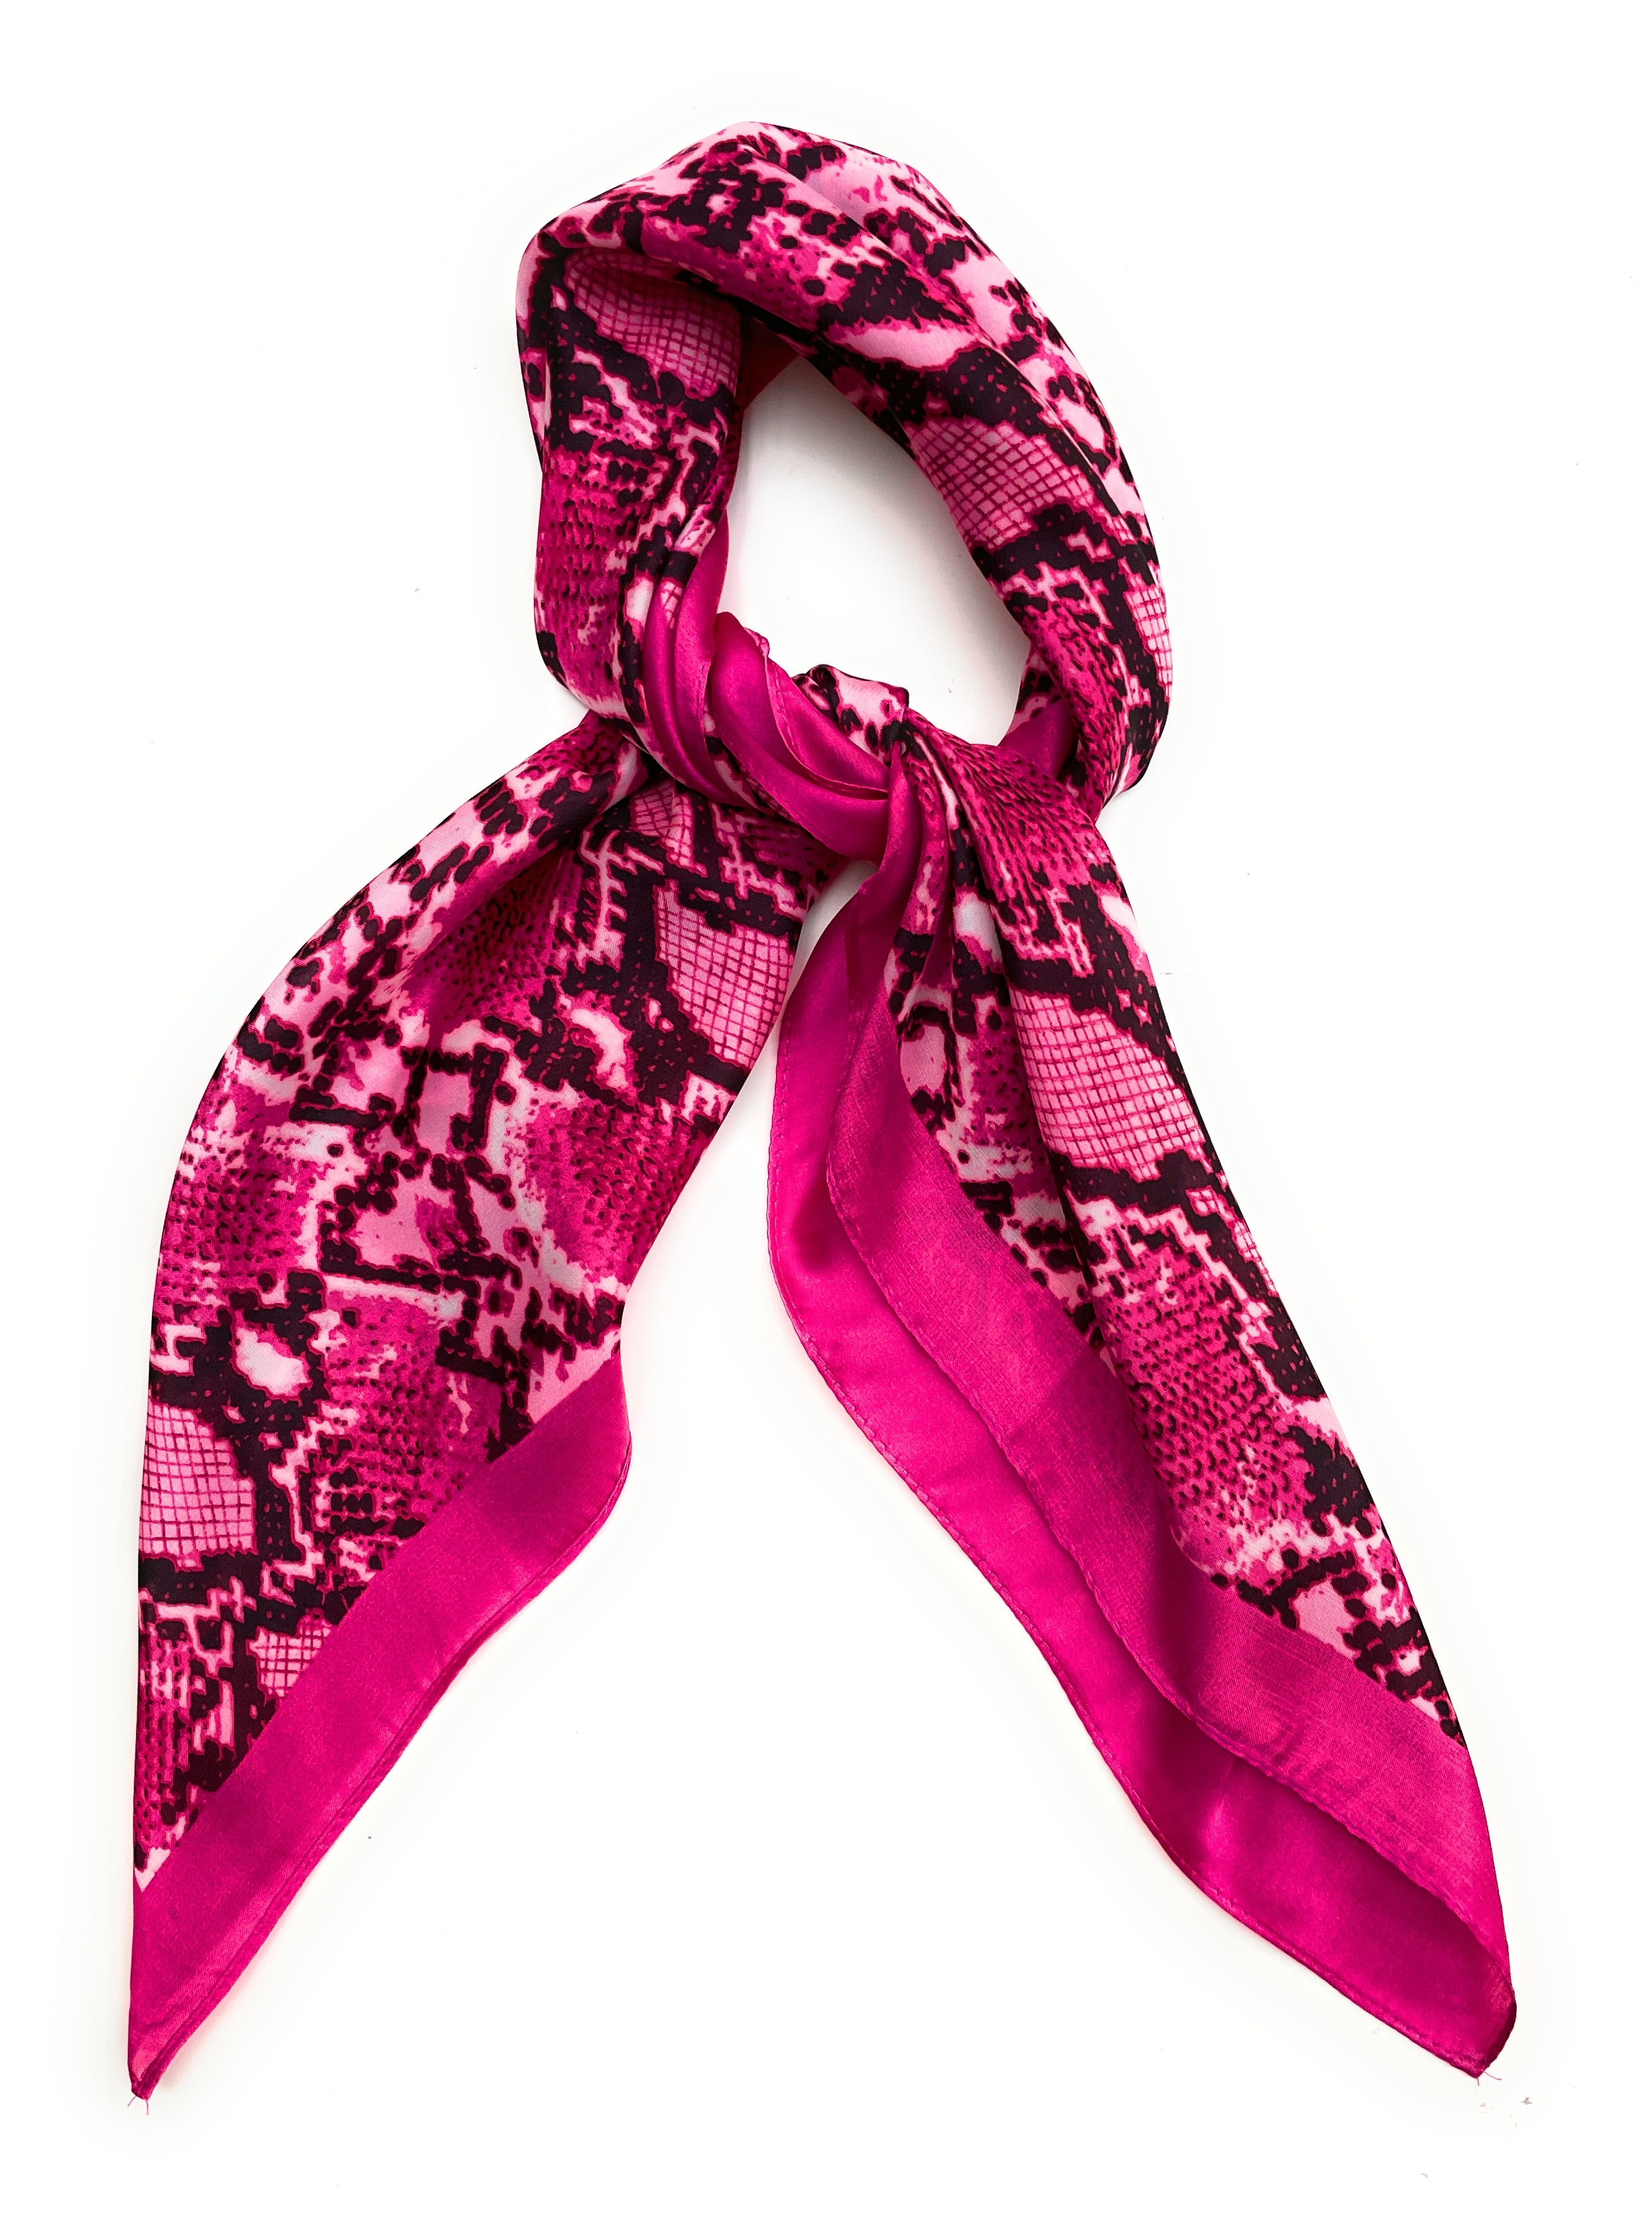 Écharpe carrée Fuchsia rose vif néon imprimé serpent, écharpe fine et soyeuse pour femmes, 70cm x 70cm, été printemps